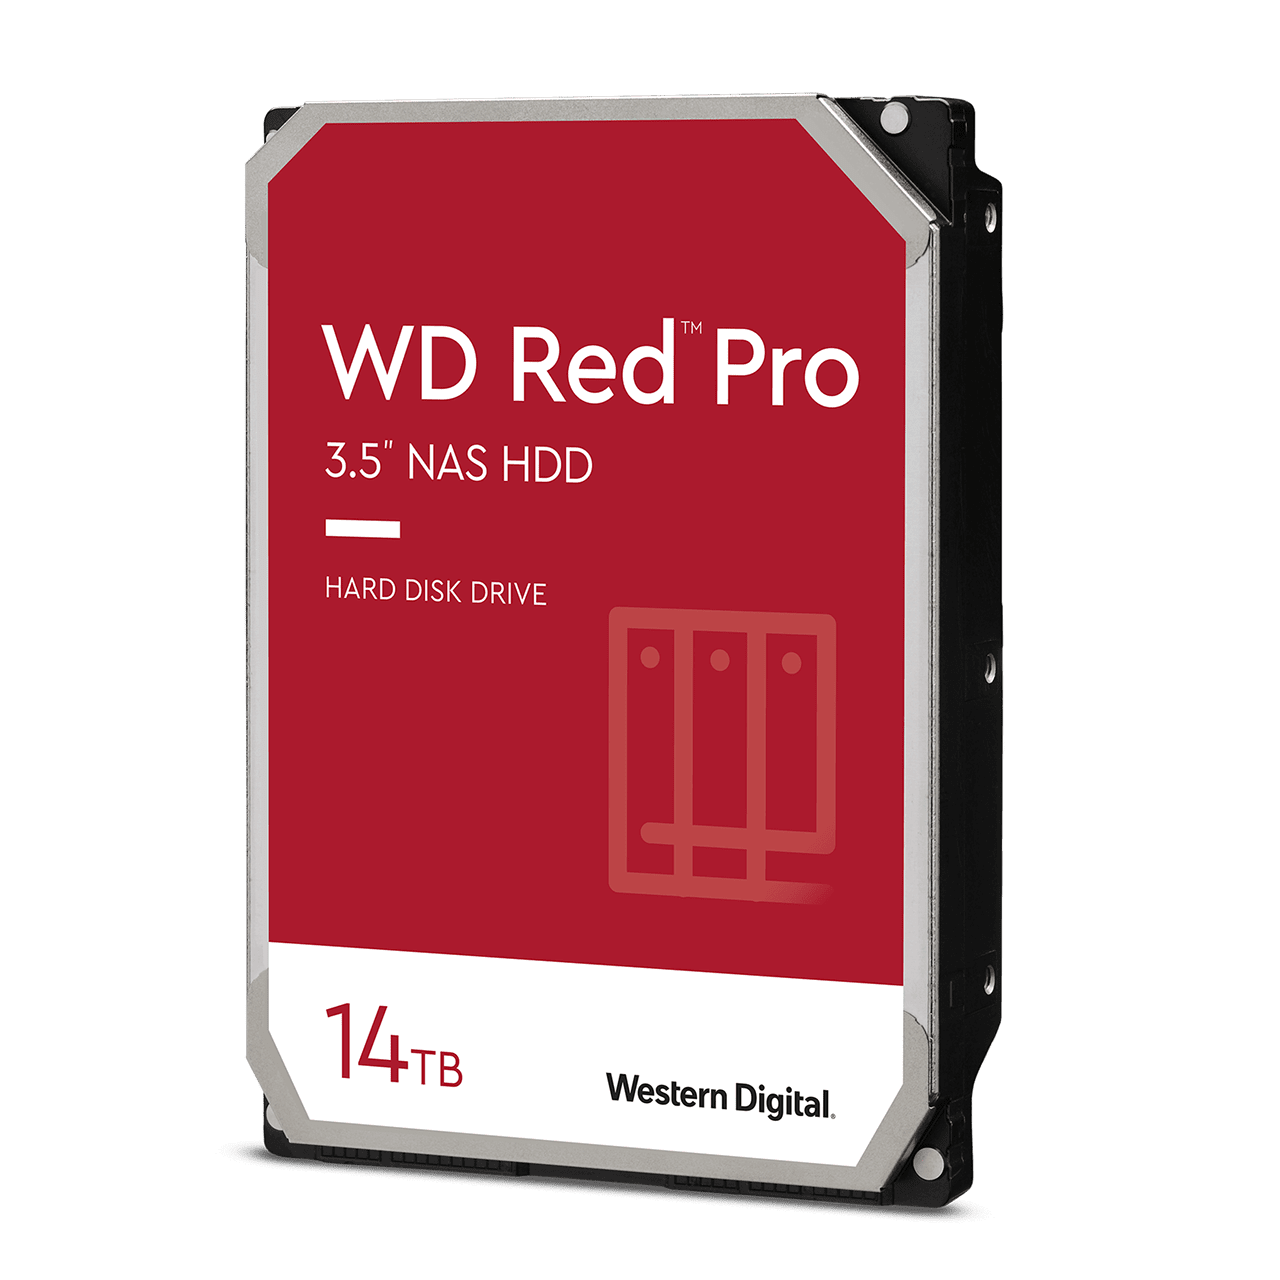 2 x 14TB Western Digital WD Red Pro 3.5" 7200 RPM CMR NAS Internal Hard Drive + SanDisk Ultra Fit USB 3.2 Flash Drive 64GB $440